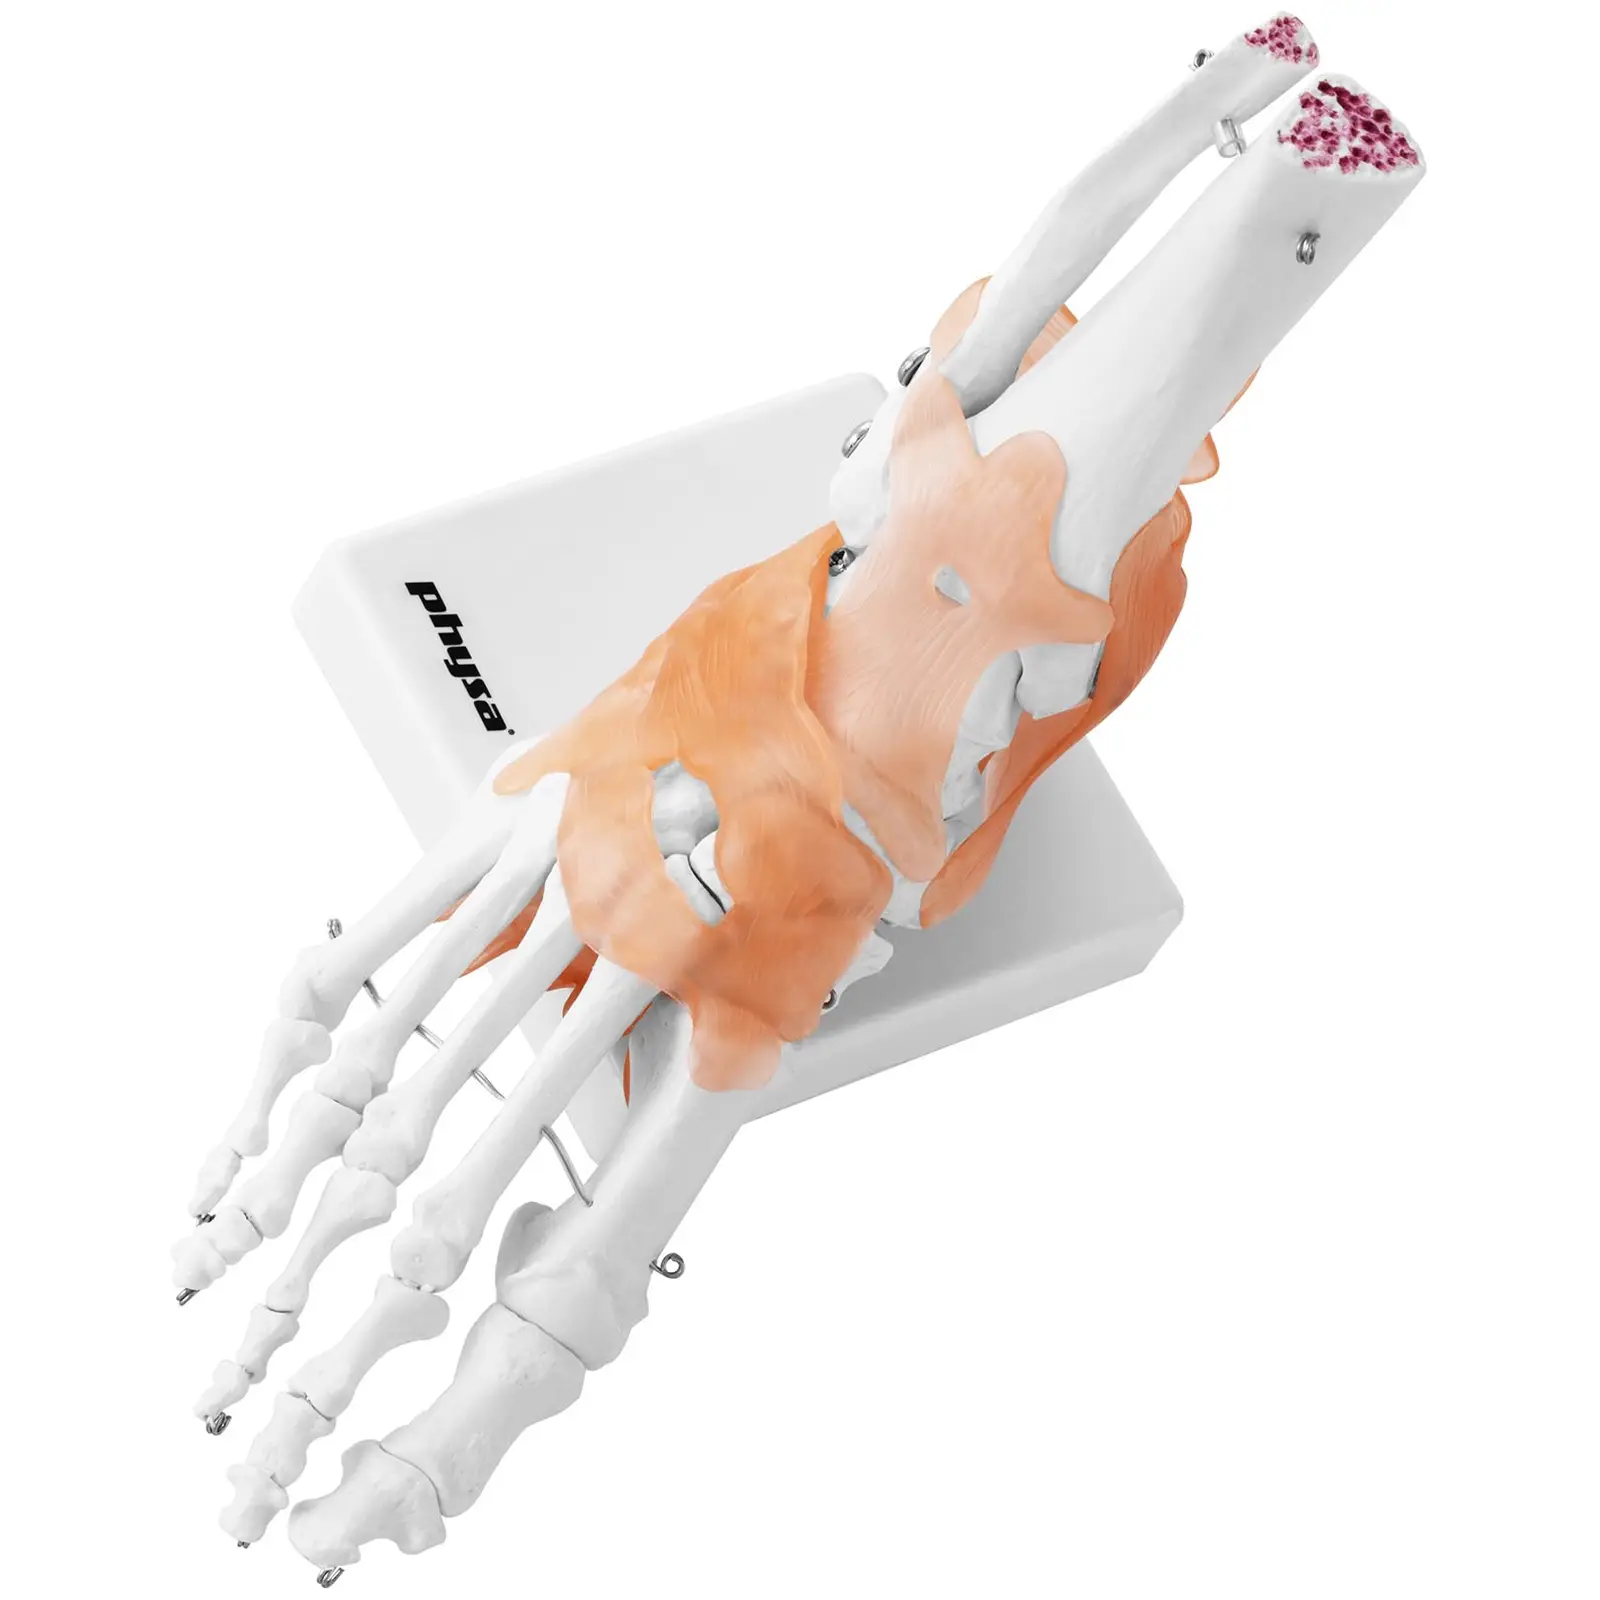 Staw skokowy - z więzadłami - model anatomiczny